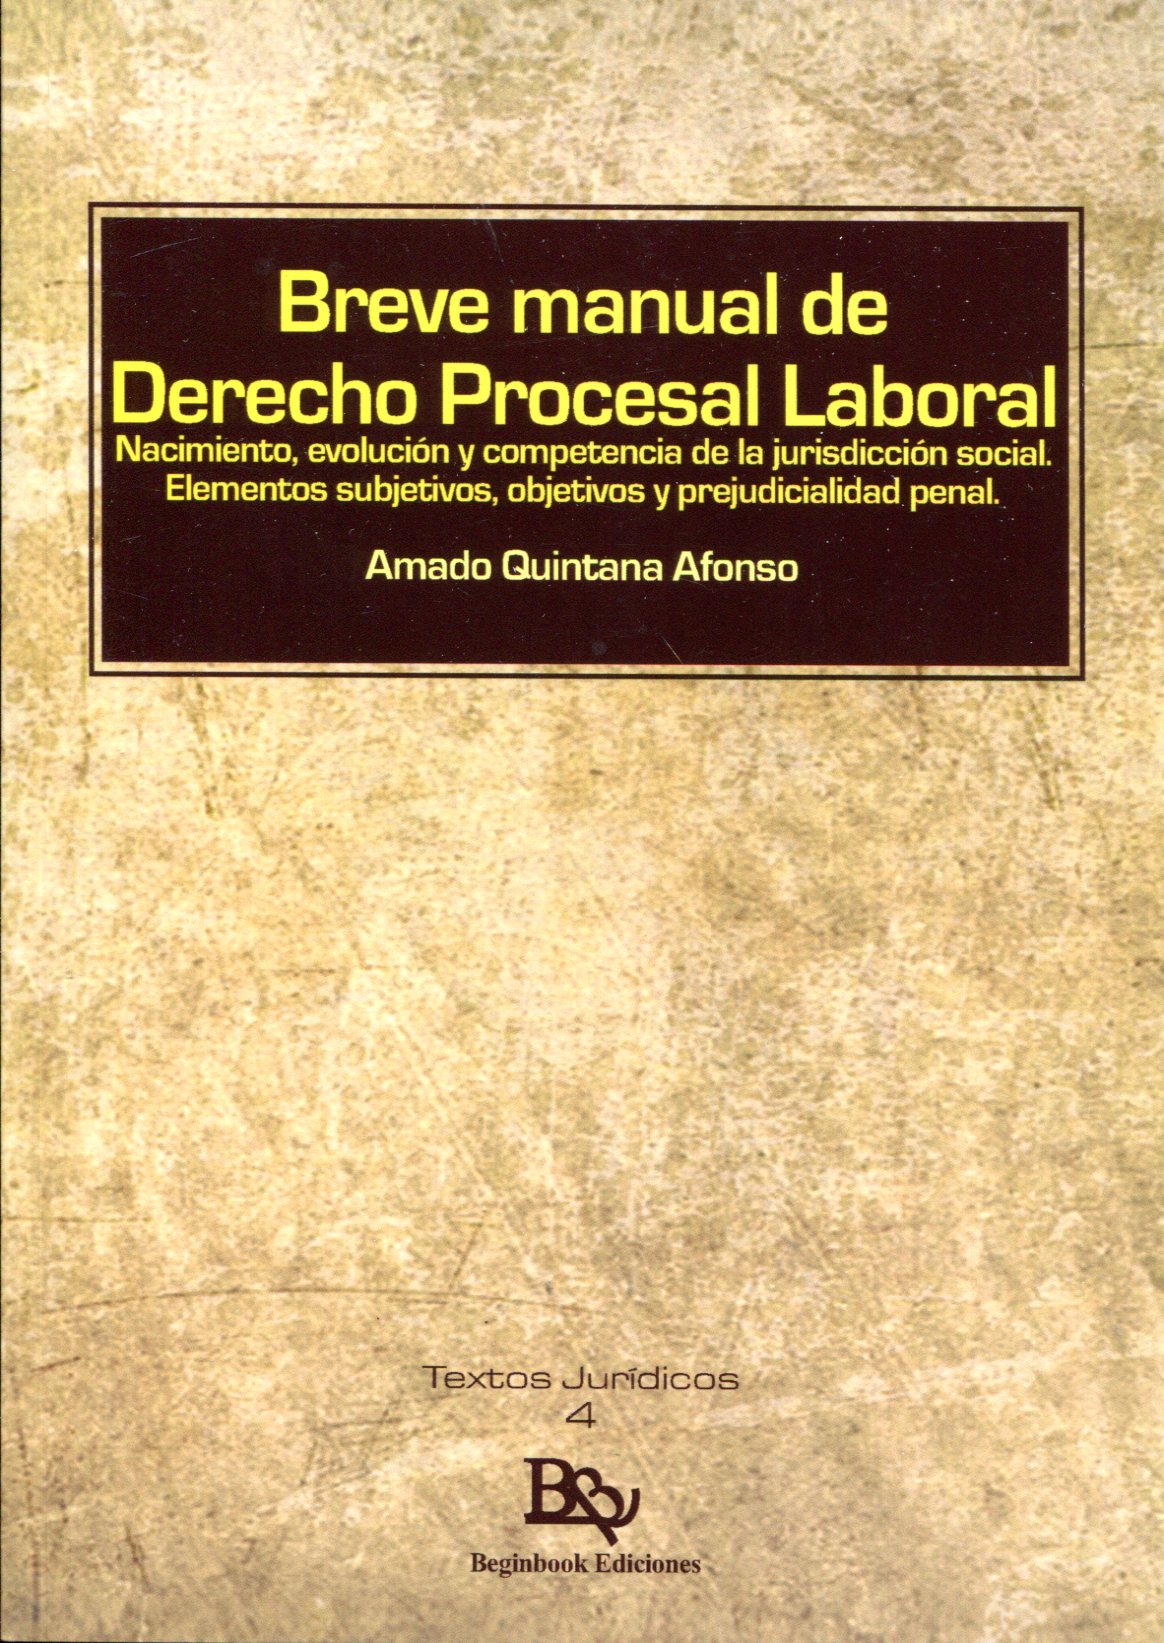 Breve manual de Derecho procesal laboral